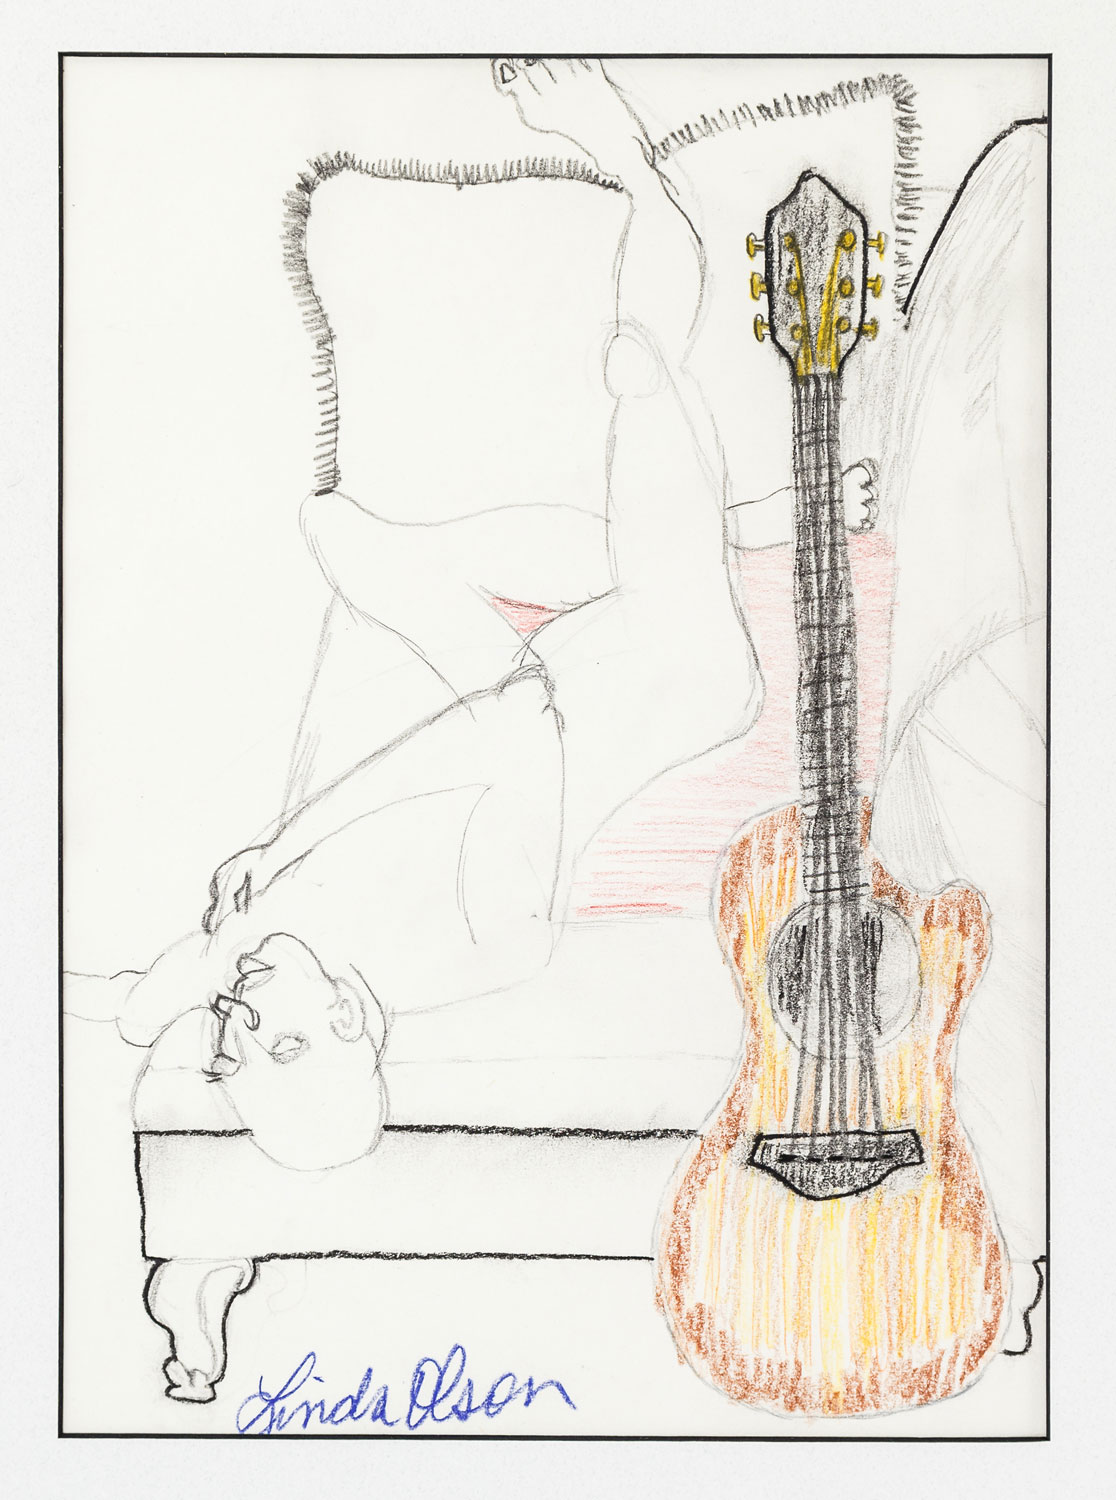 The Fireside, Kenosha • 4/22/18 • Graphite on paper